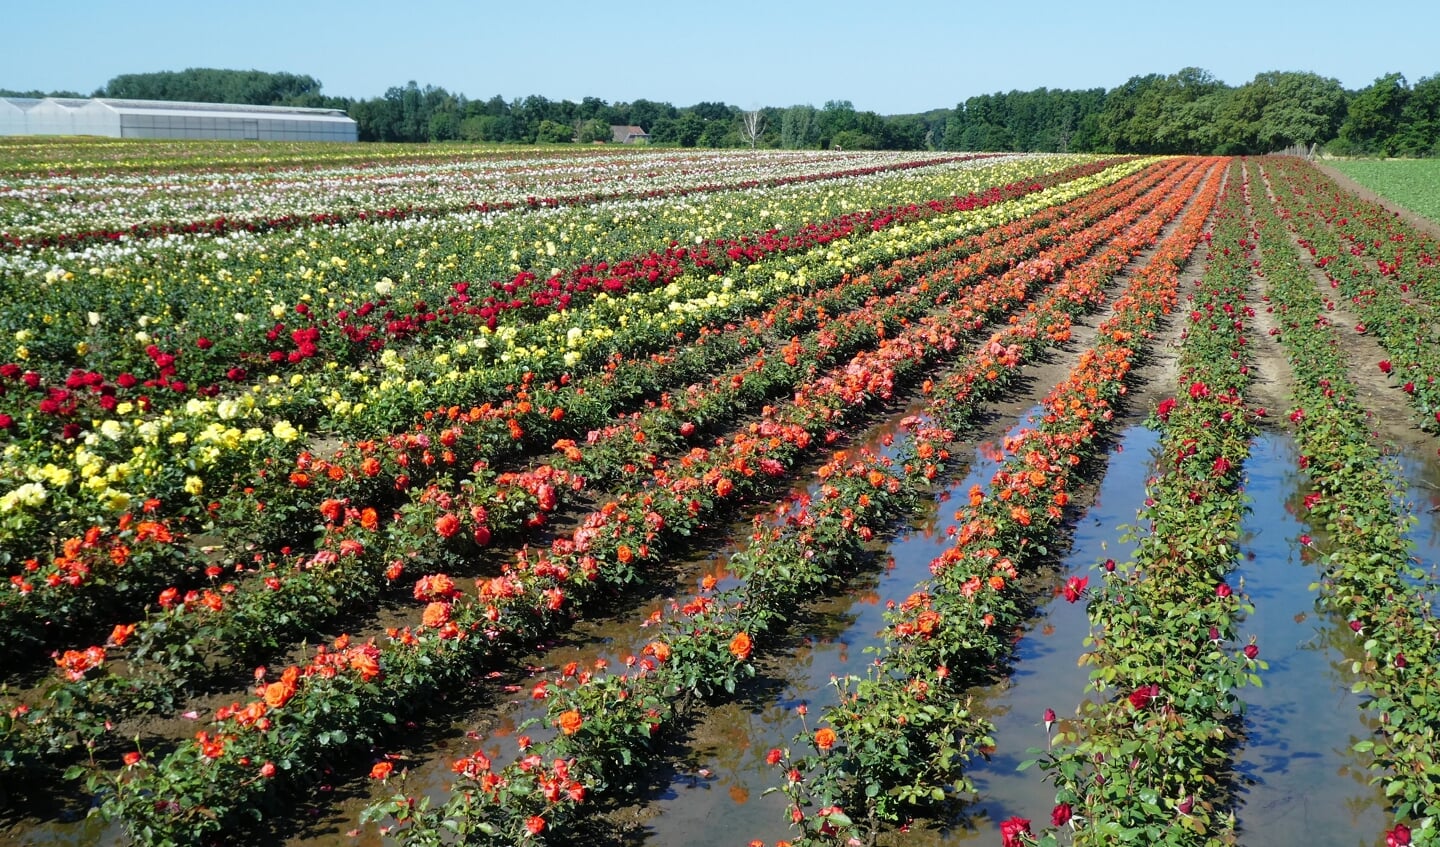 'Begin juli zijn we naar midden-Limburg geweest. We kennen de tulpenbollenvelden in april in het westen van het land en  steeds meer in de IJselmeerpolders. Grote velden  in allerlei kleuren. Maar in midden-Limburg kunnen  ze er ook wat van. Niet in april, maar juni en juli. Grote velden rozen in allerlei kleuren en maten. Adembenemend.'

